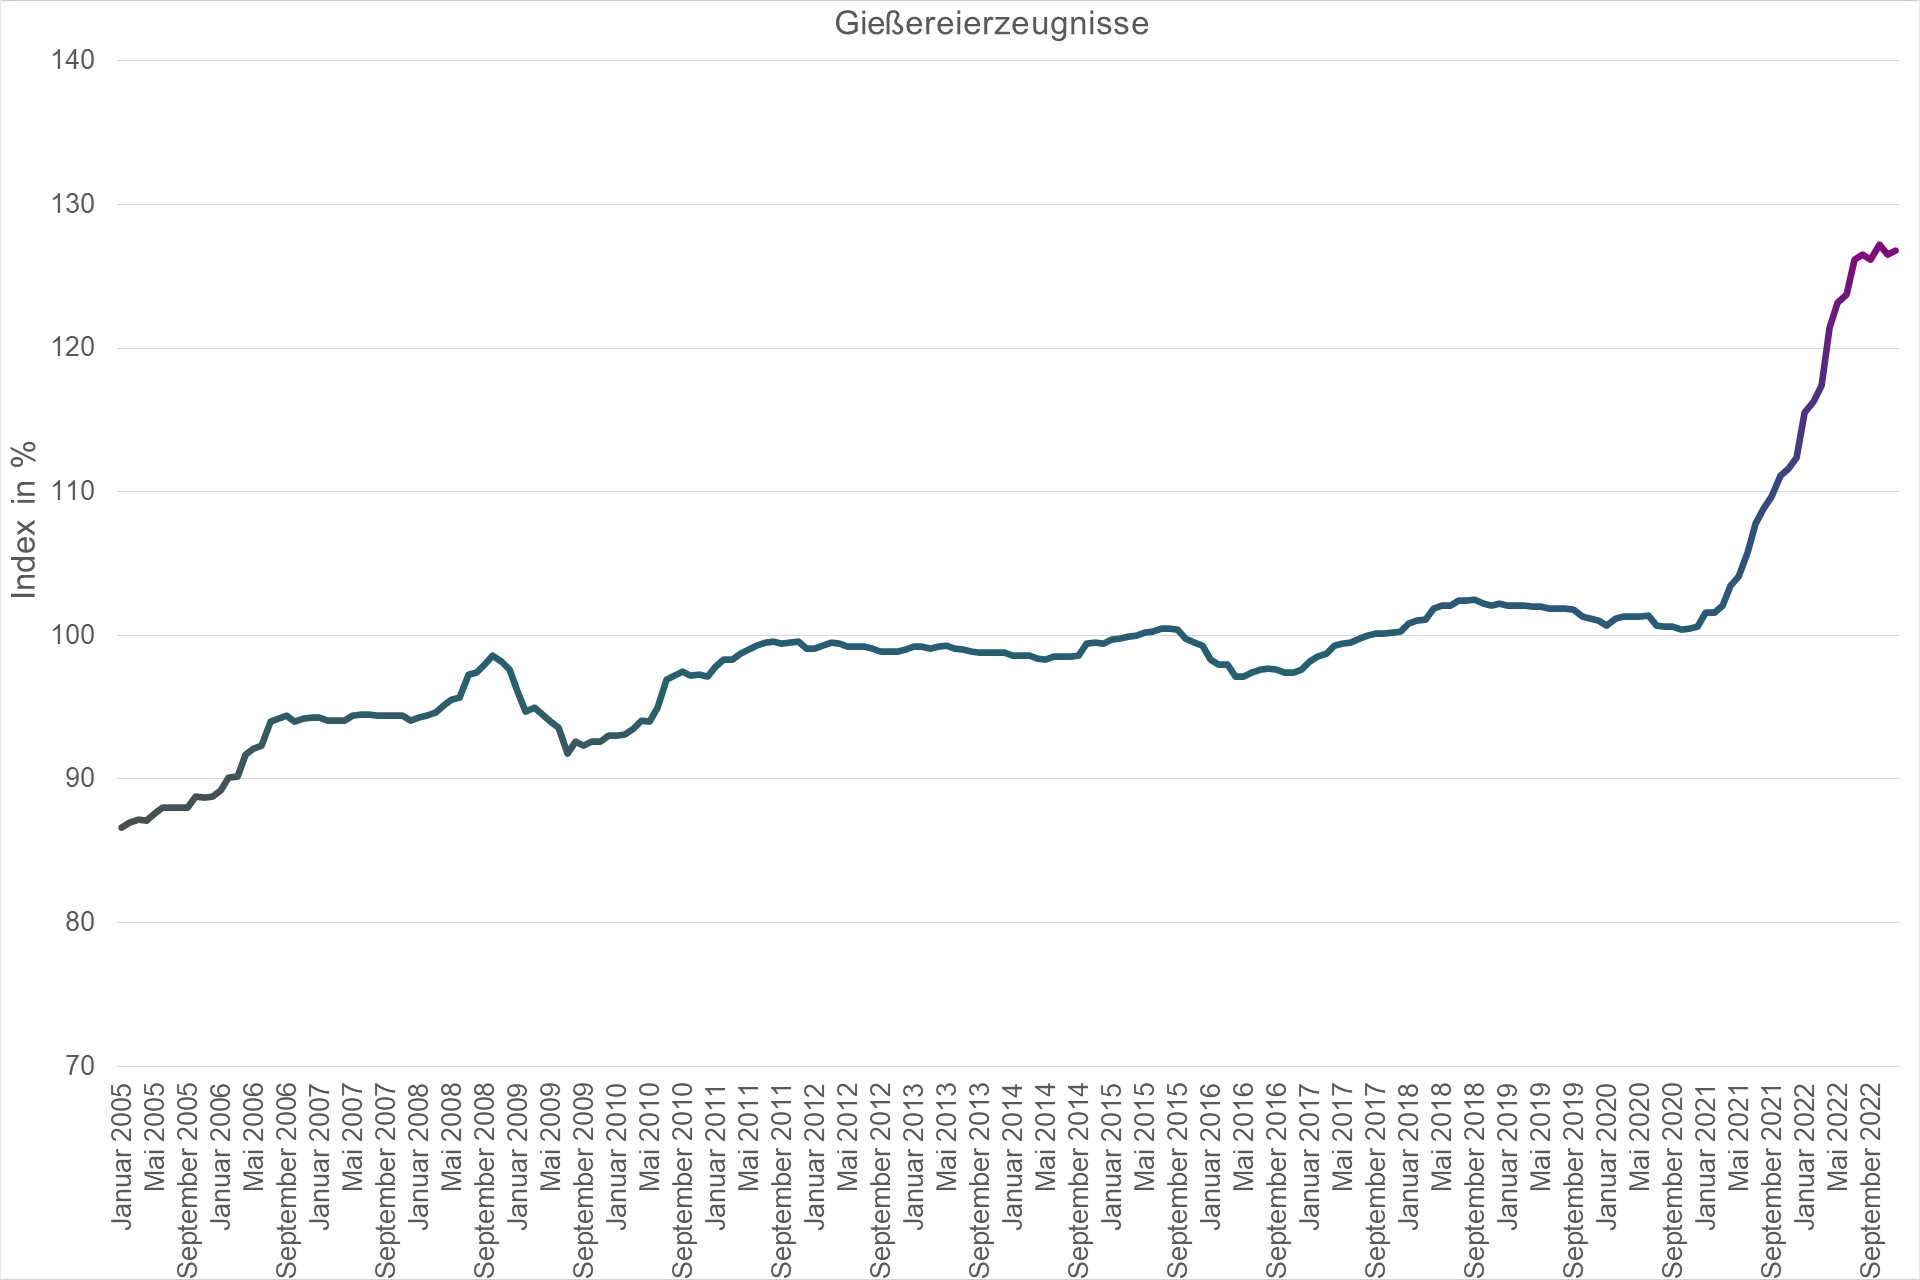 Grafik Preisindex Gießereierzeugnisse